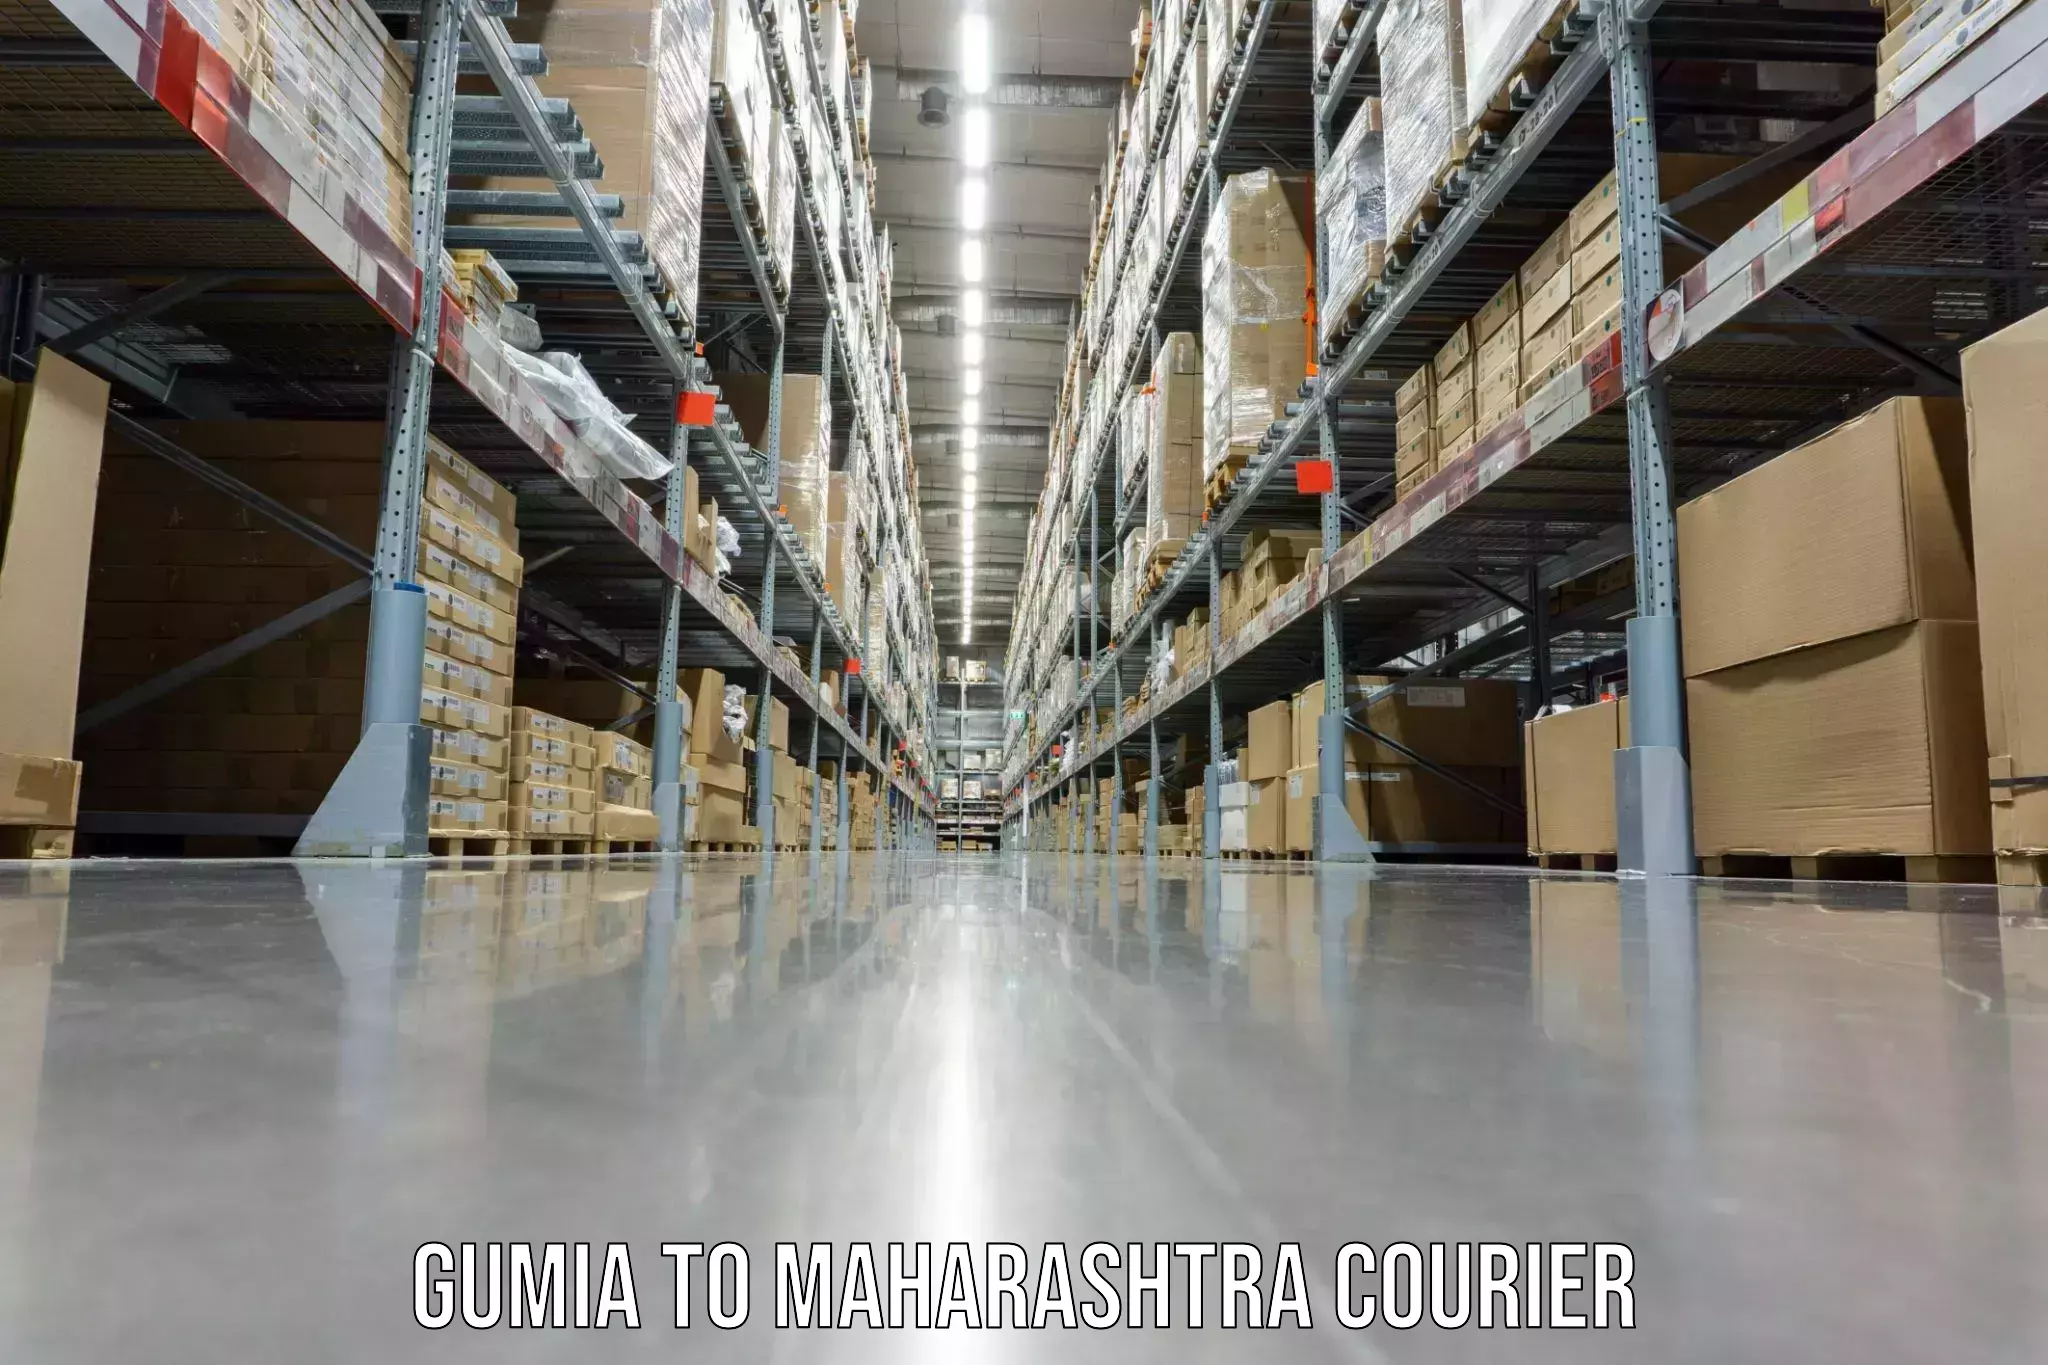 Full-service household moving Gumia to Maharashtra